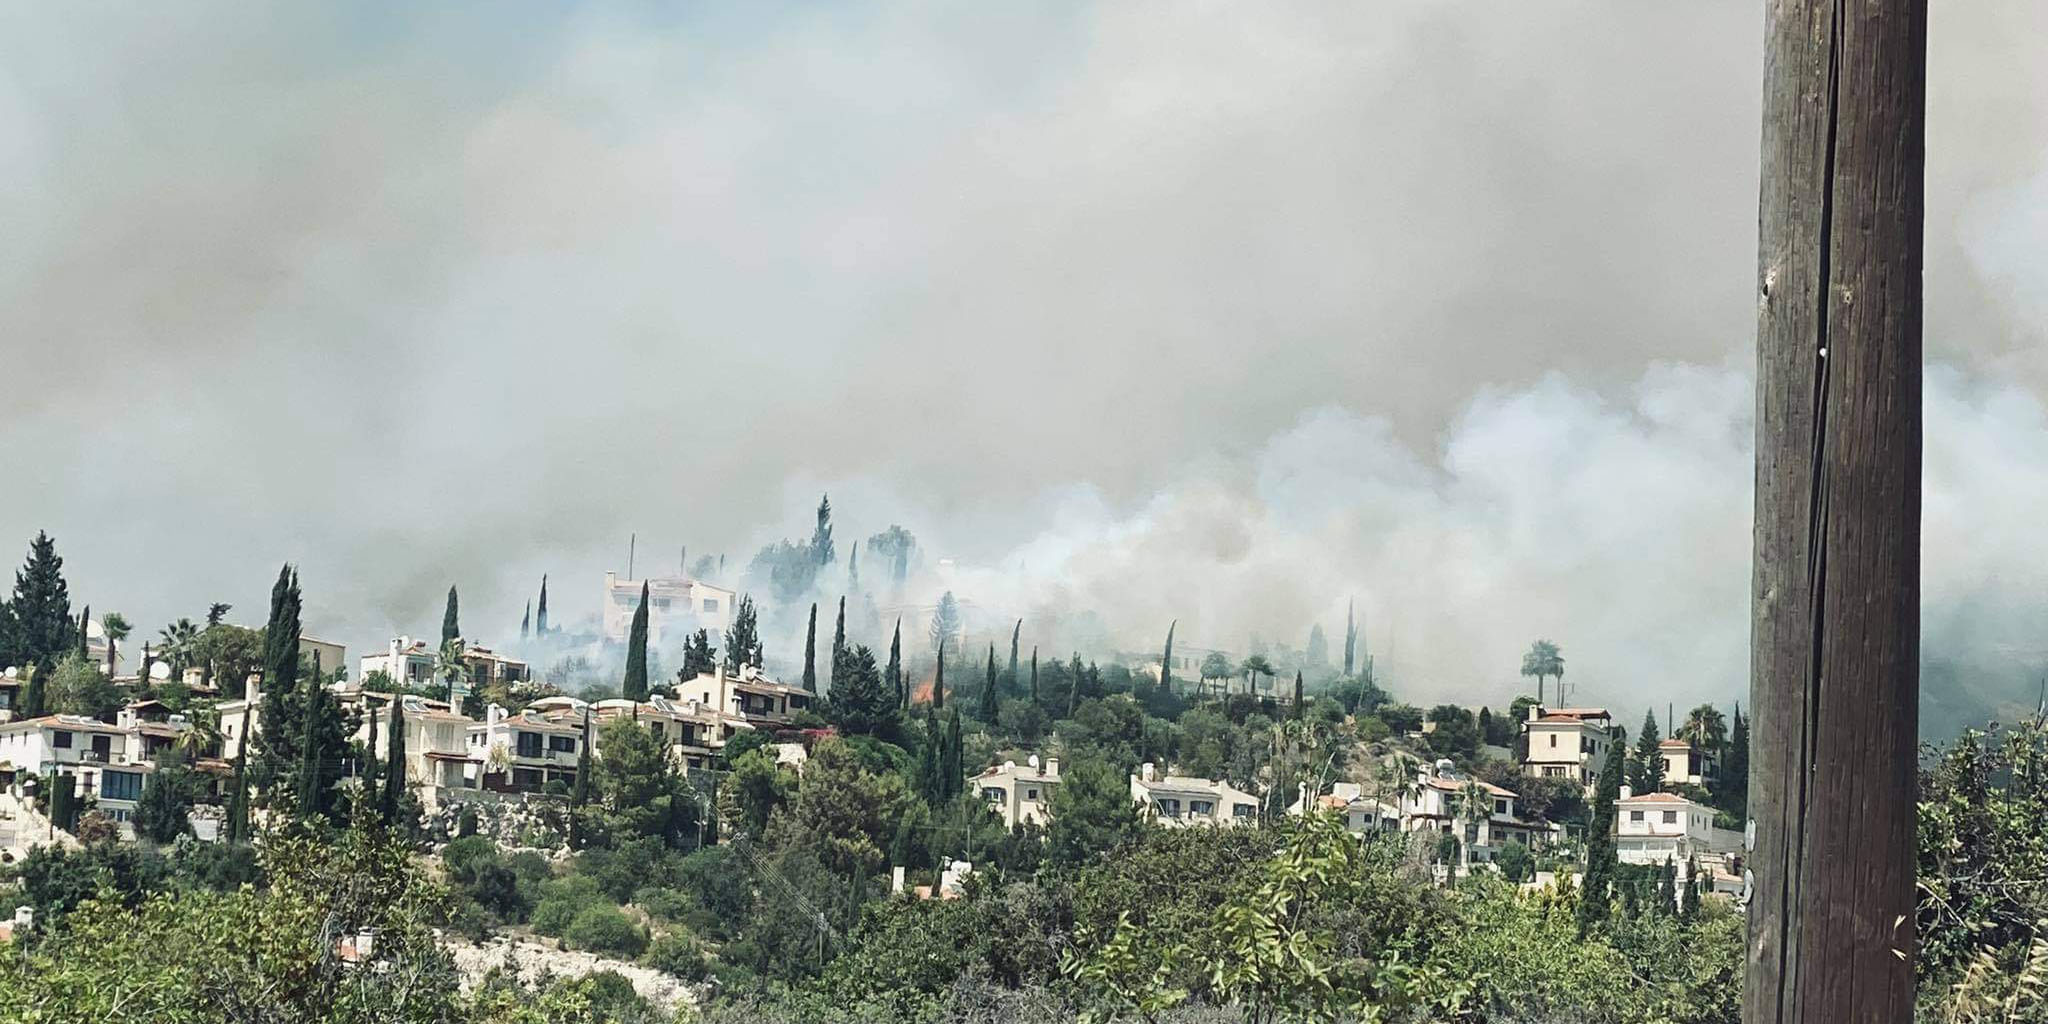 Ζημιές σε οχήματα και κατοικίες από την πυρκαγιά στην Πάφο - Σε εφαρμογή το σχέδιο Ίκαρος 2 -ΒΙΝΤΕΟ -ΦΩΤΟΓΡΑΦΙΕΣ 